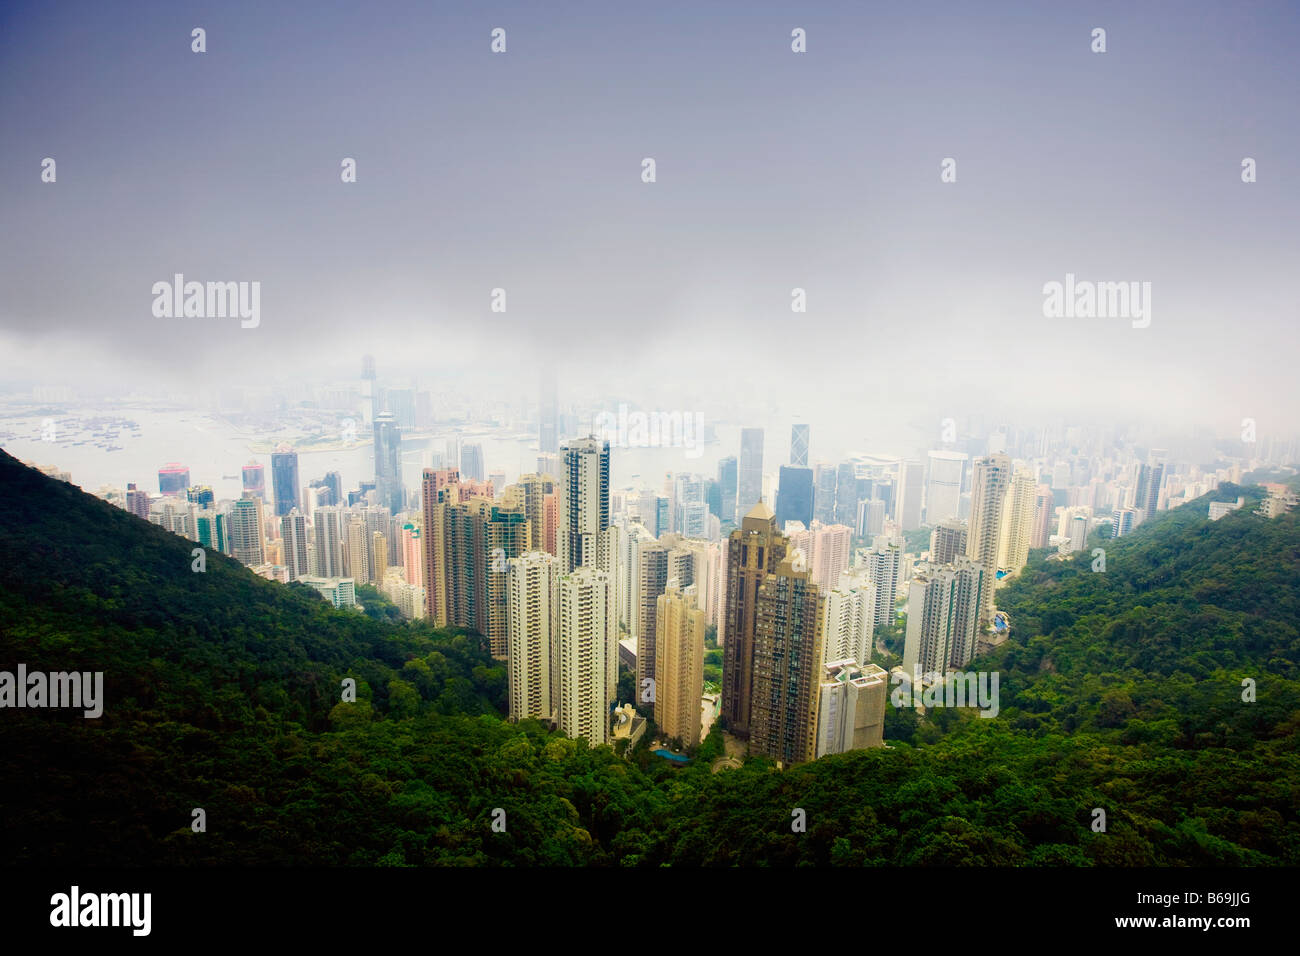 Vue aérienne de gratte-ciel dans une ville, l'île de Hong Kong, Hong Kong, Chine Banque D'Images